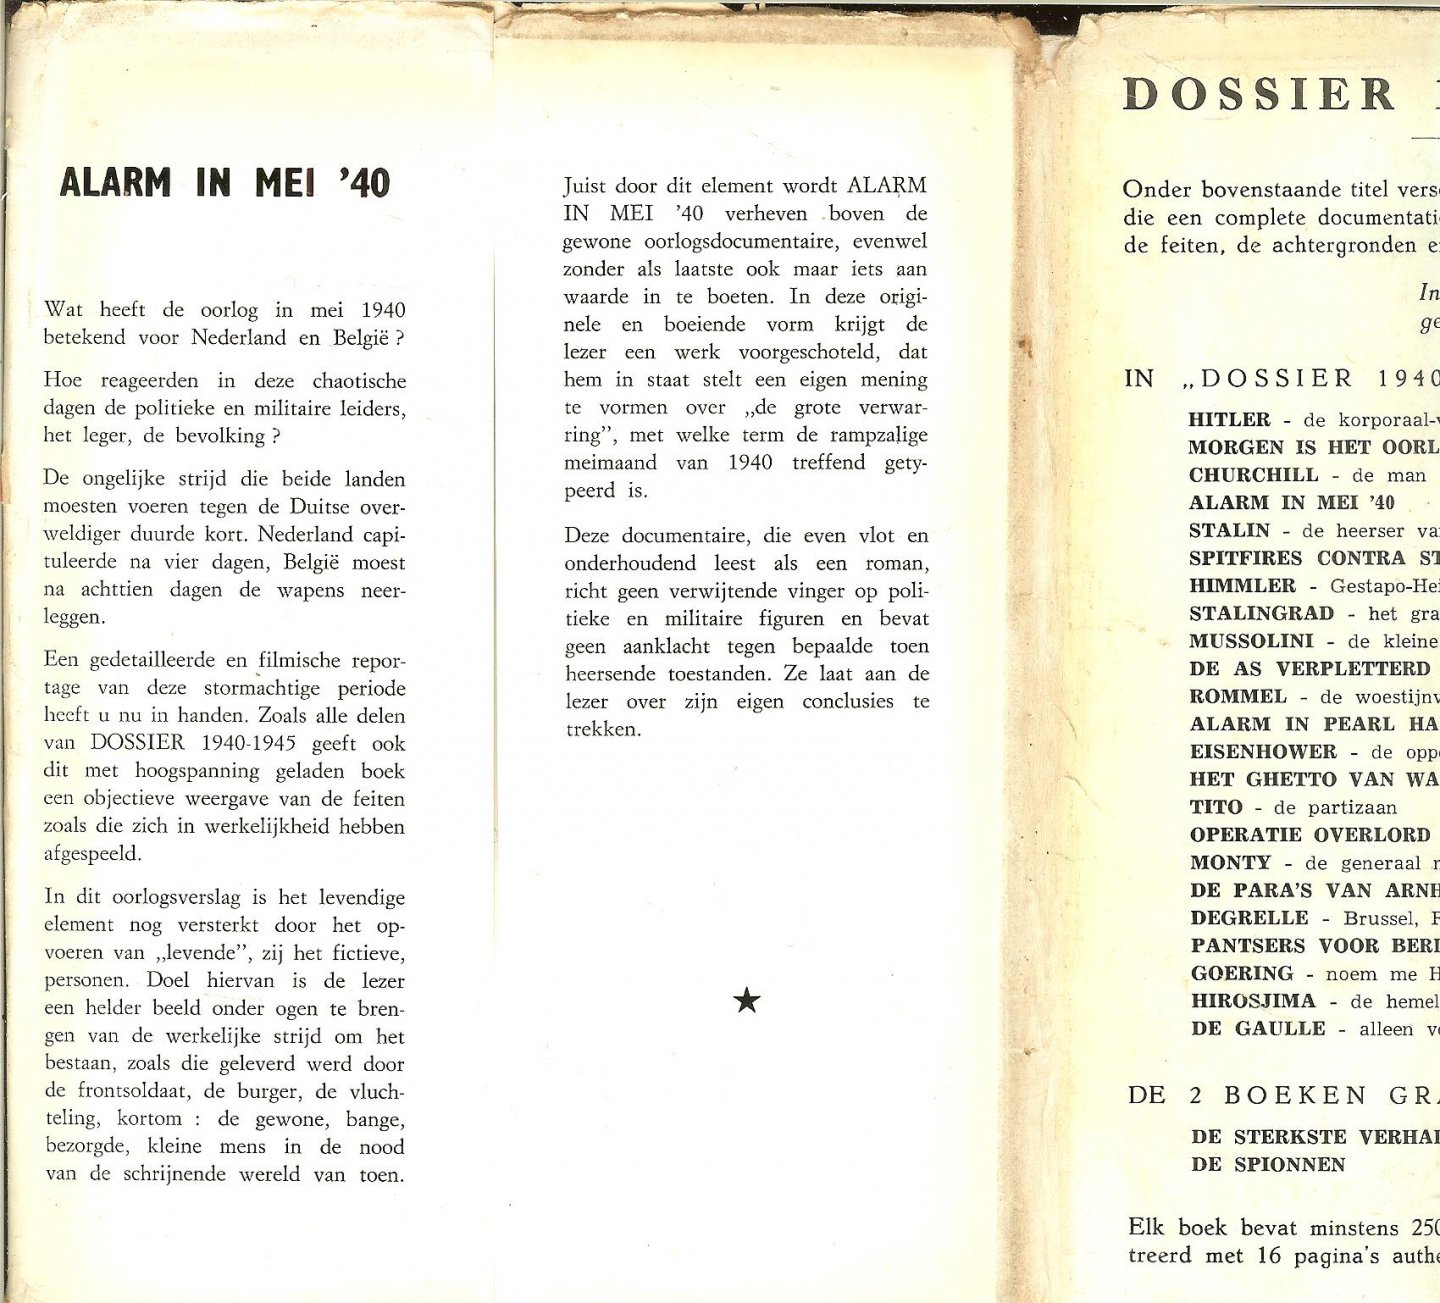 Bouwens Jan  Free-lance journalist en medewerker aan radio en Tv. nieuws dienst , die ookdit boek schreef - Alarm in mei 40 (uit de serie: Dossier 1940-1945)  met 8 pagina's zwart wit foto's